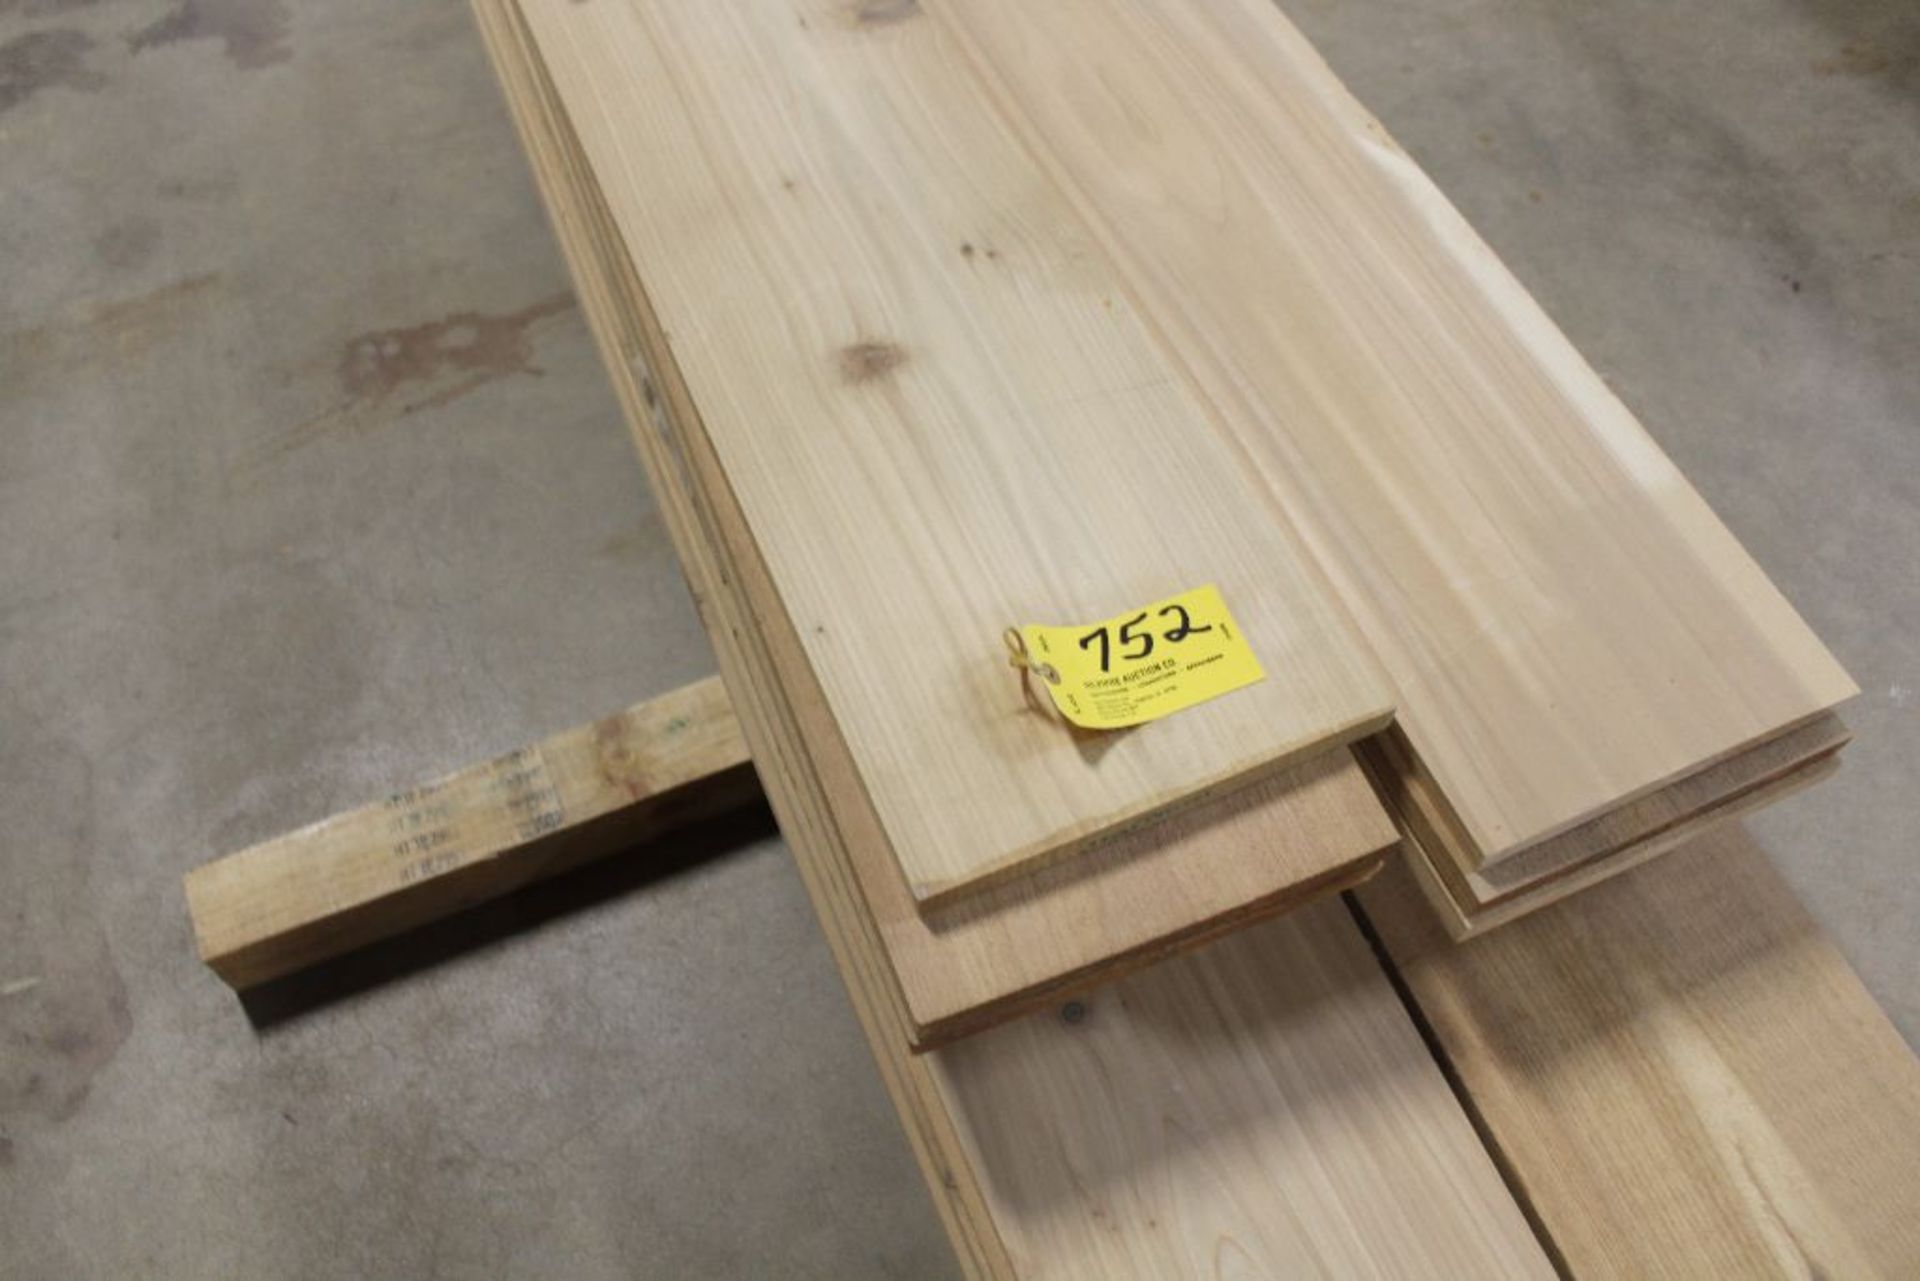 Lumber, 3/4" x 12" x 15', rough, cedar, pine.